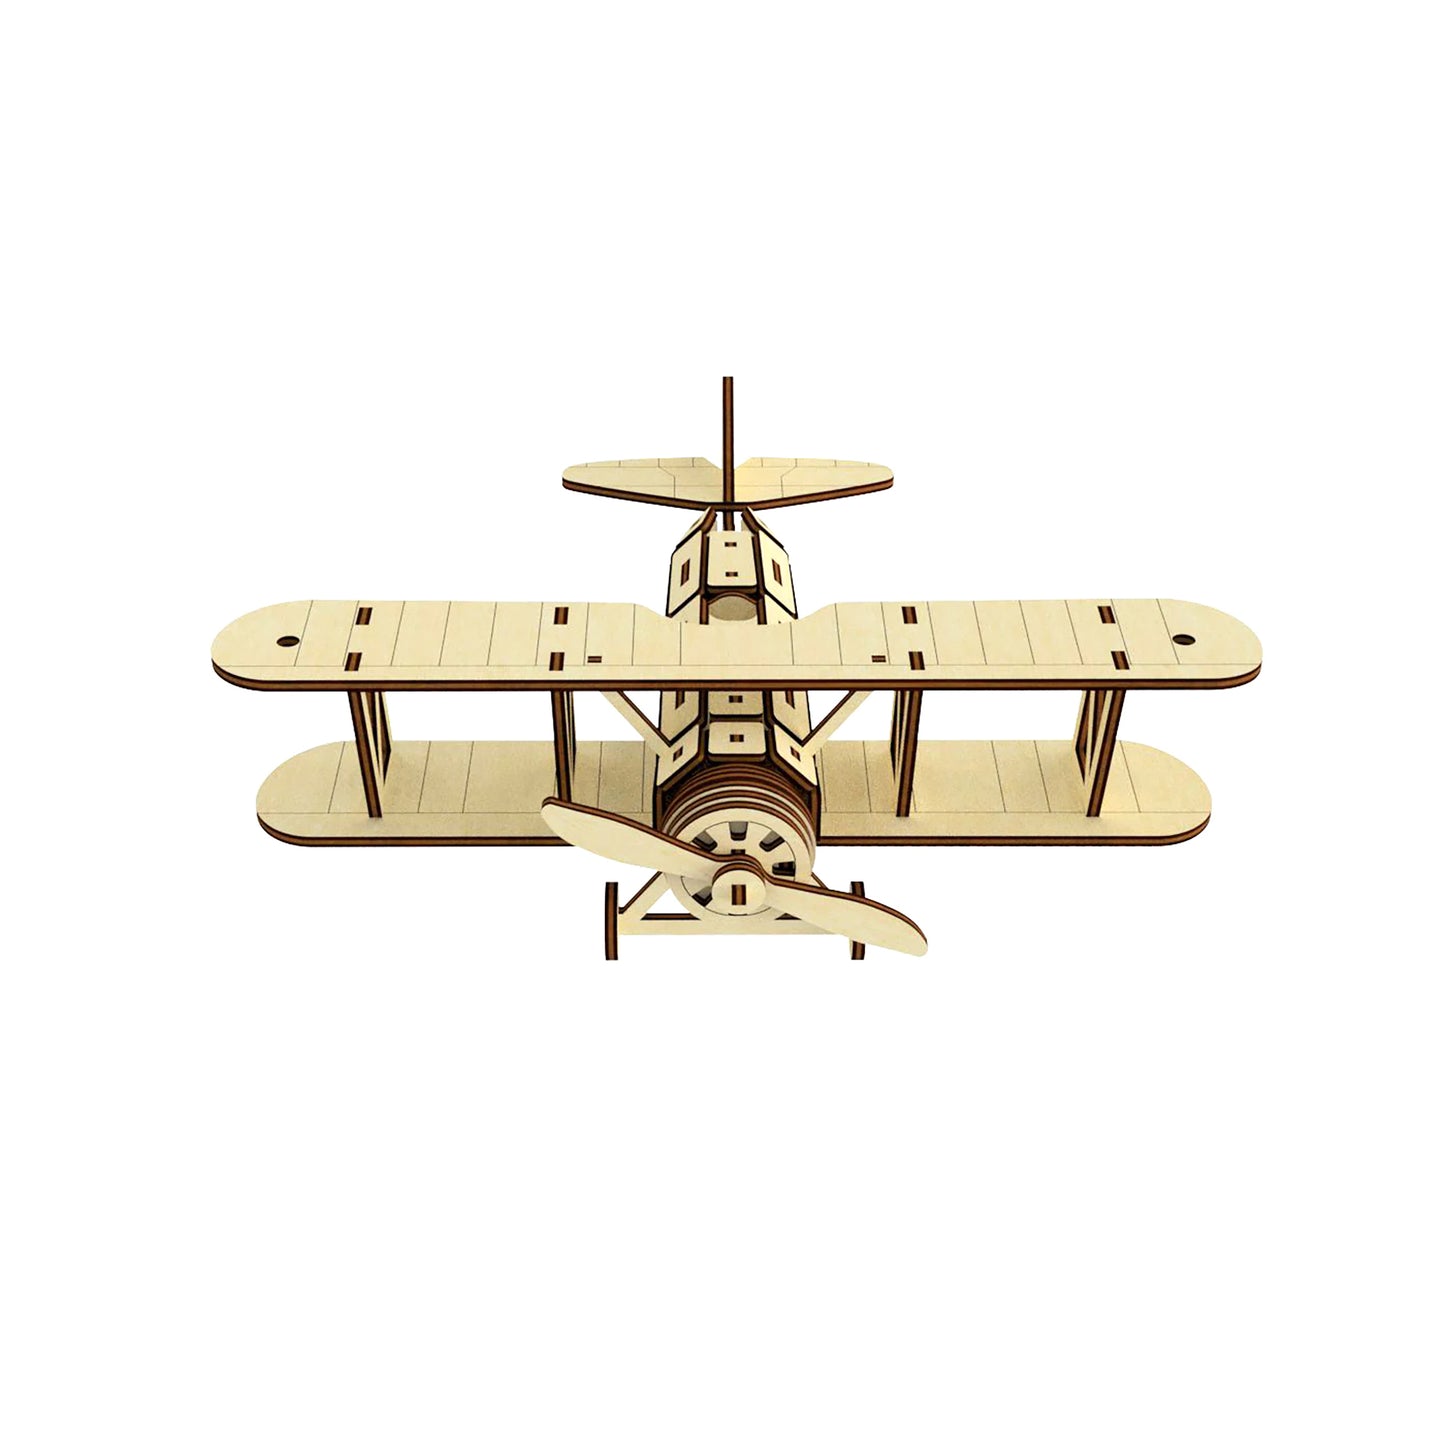 Biplane Model Single Propeller